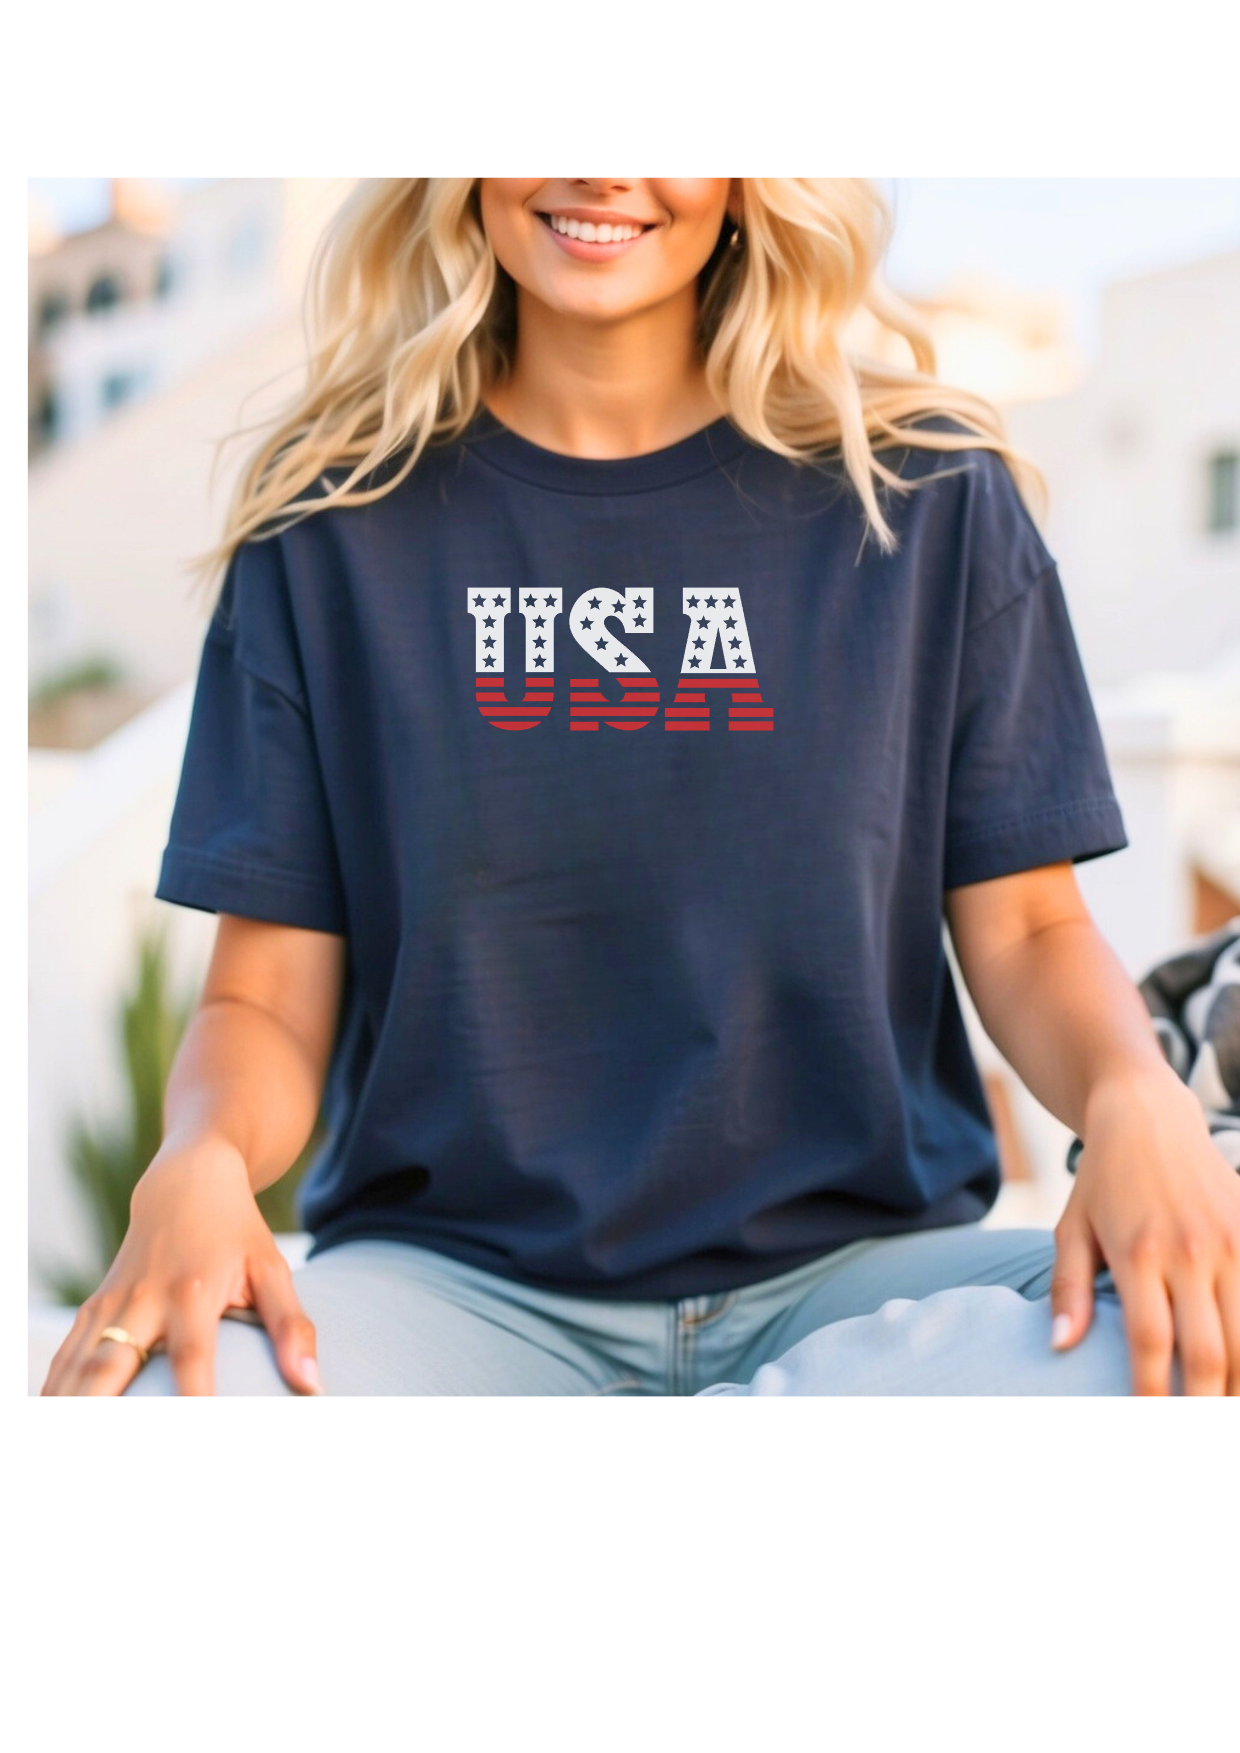 USA Shirt - 2 Options